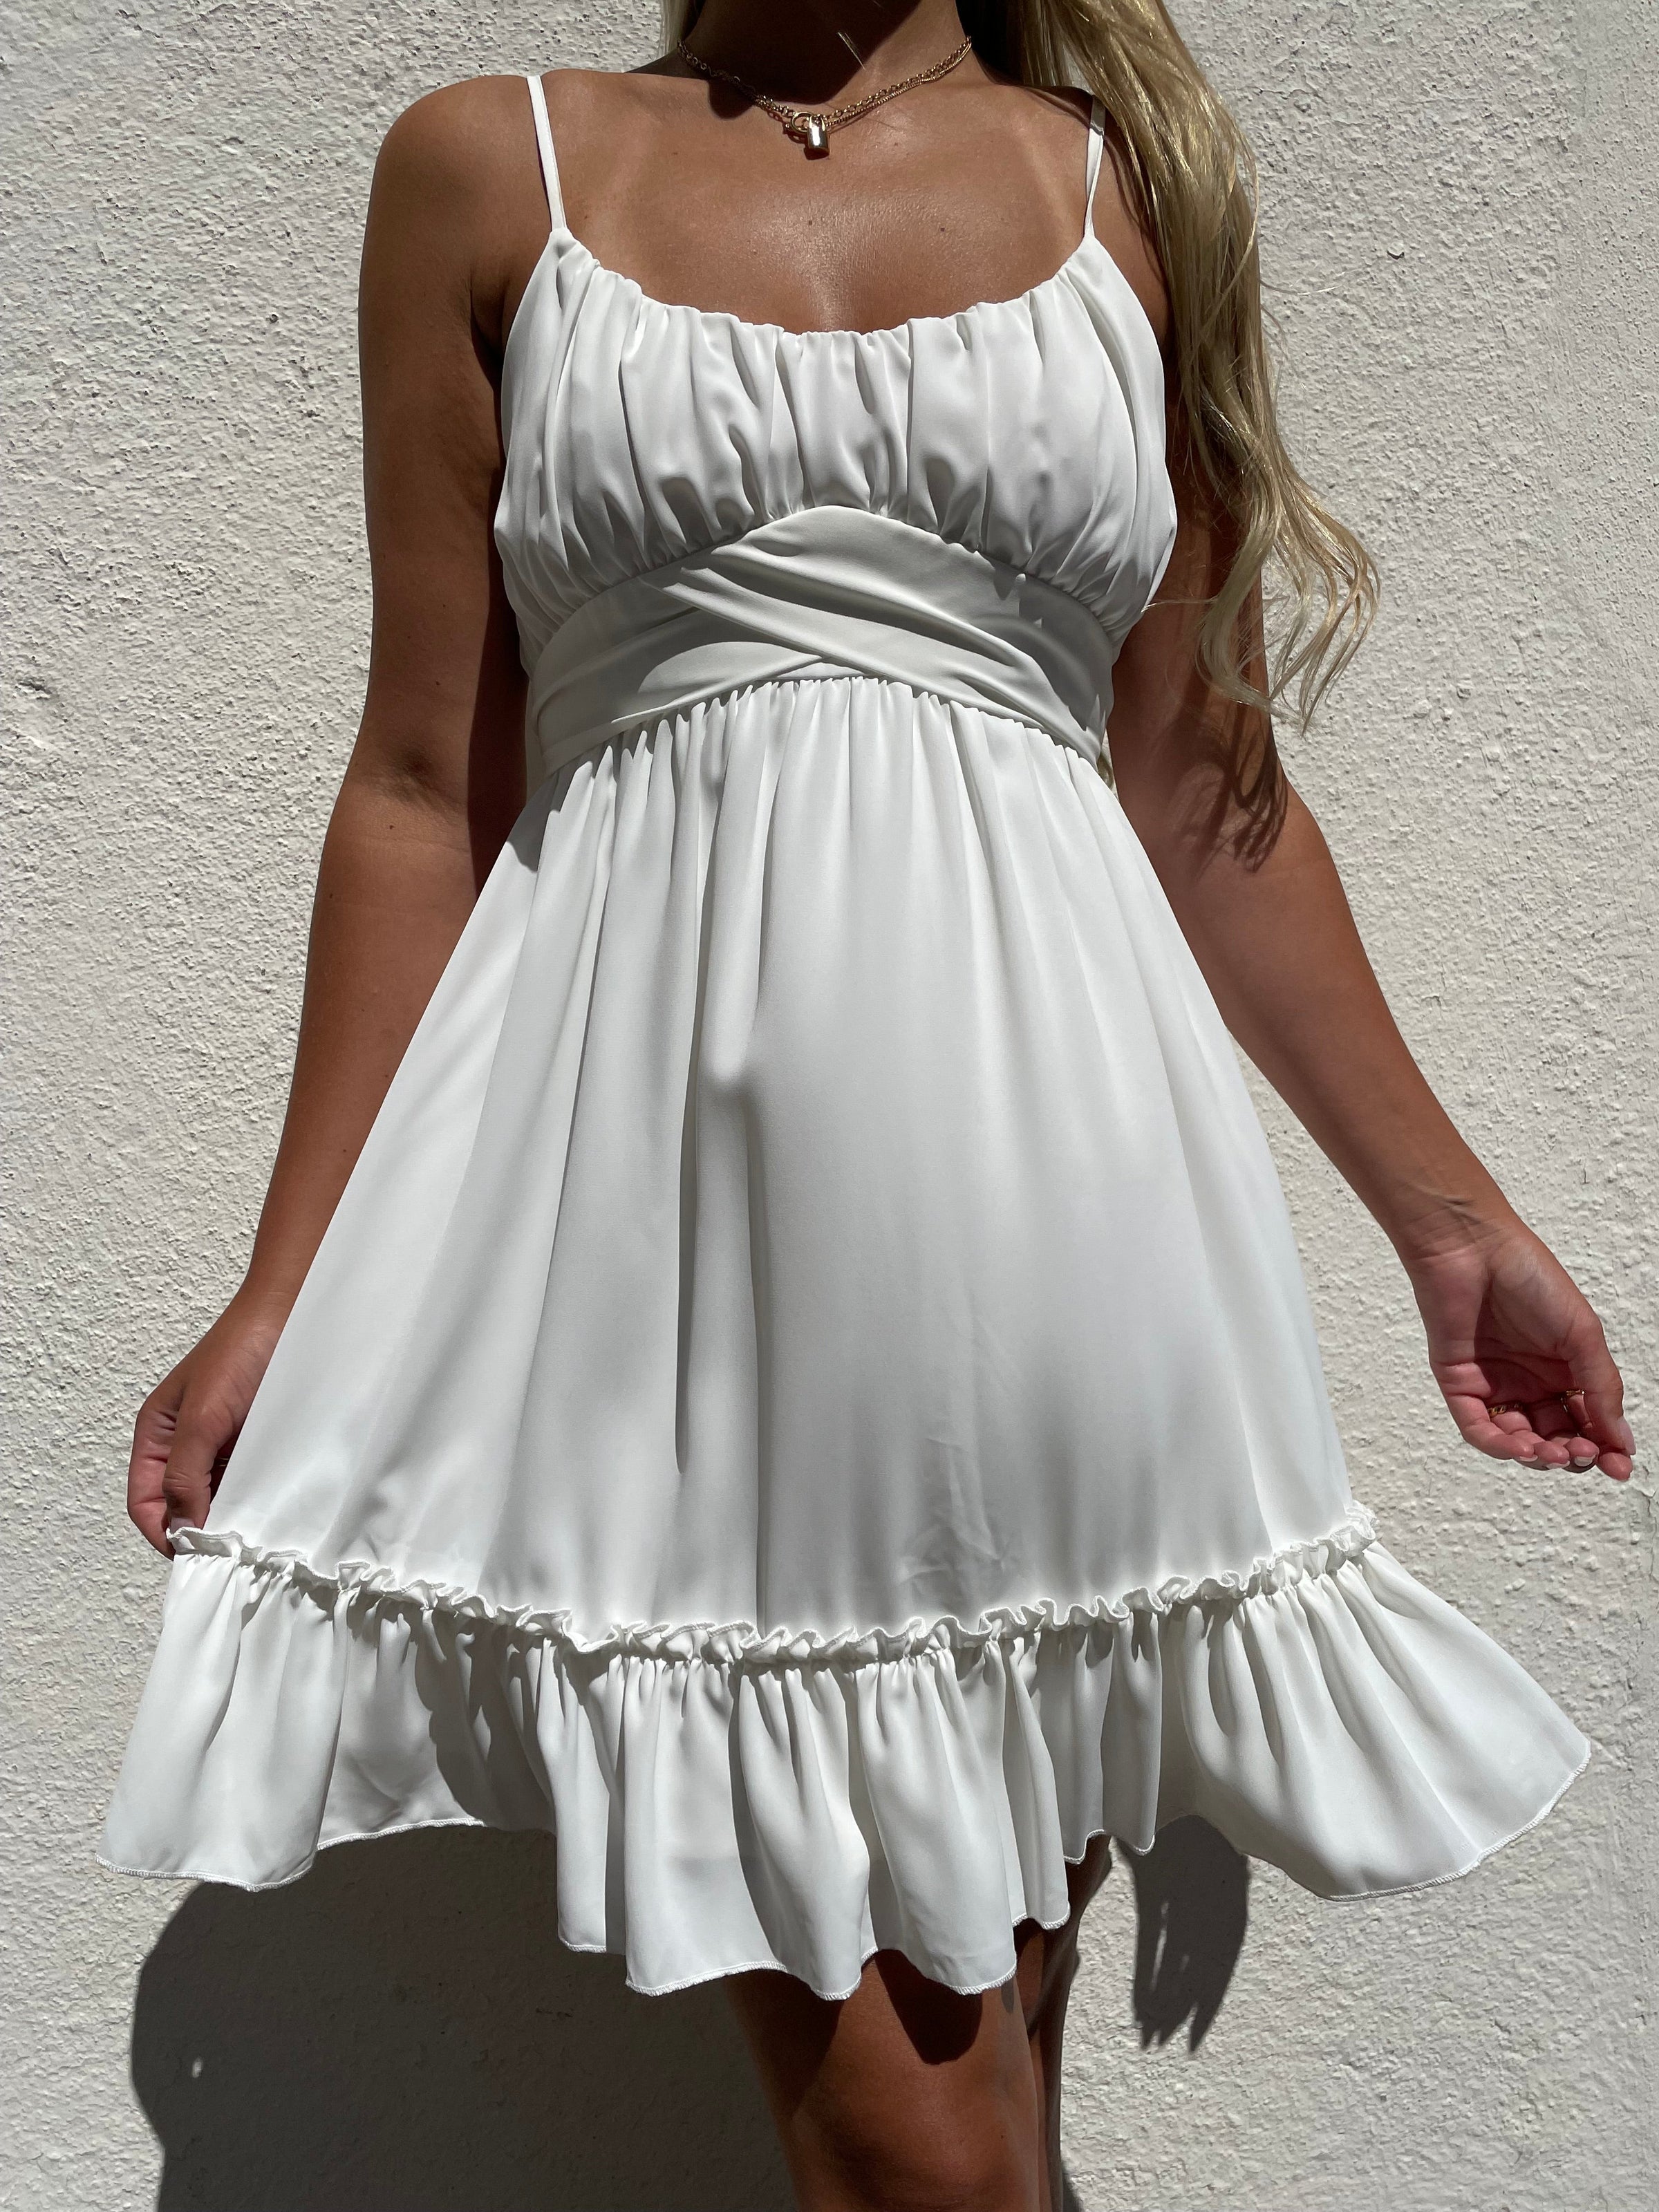 Shop hvide kjoler online l Frank Hurtig levering